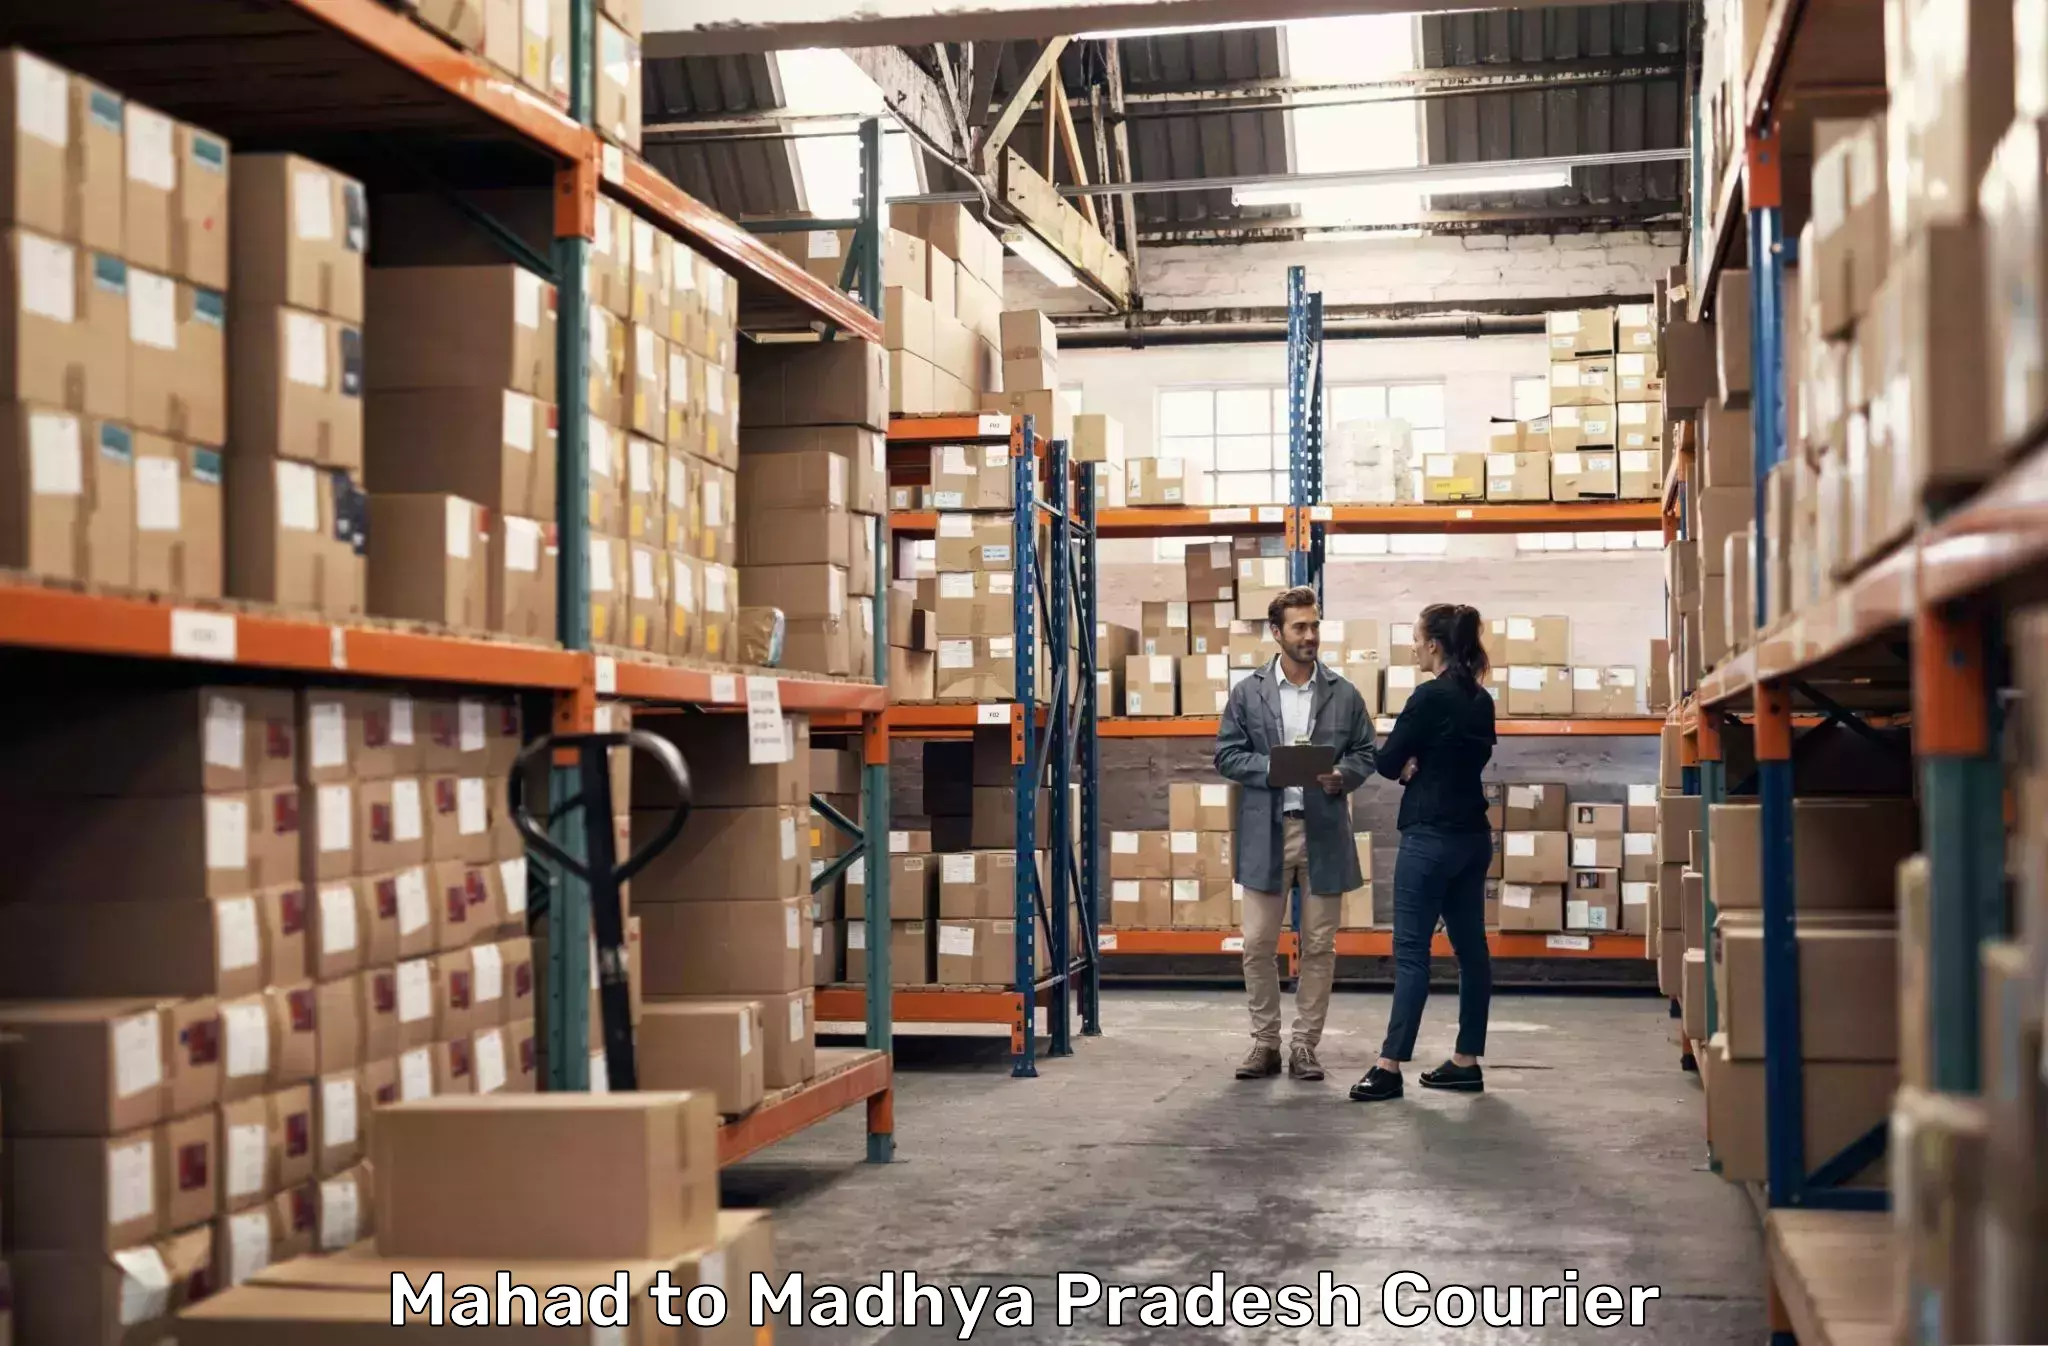 24/7 shipping services Mahad to Vidisha